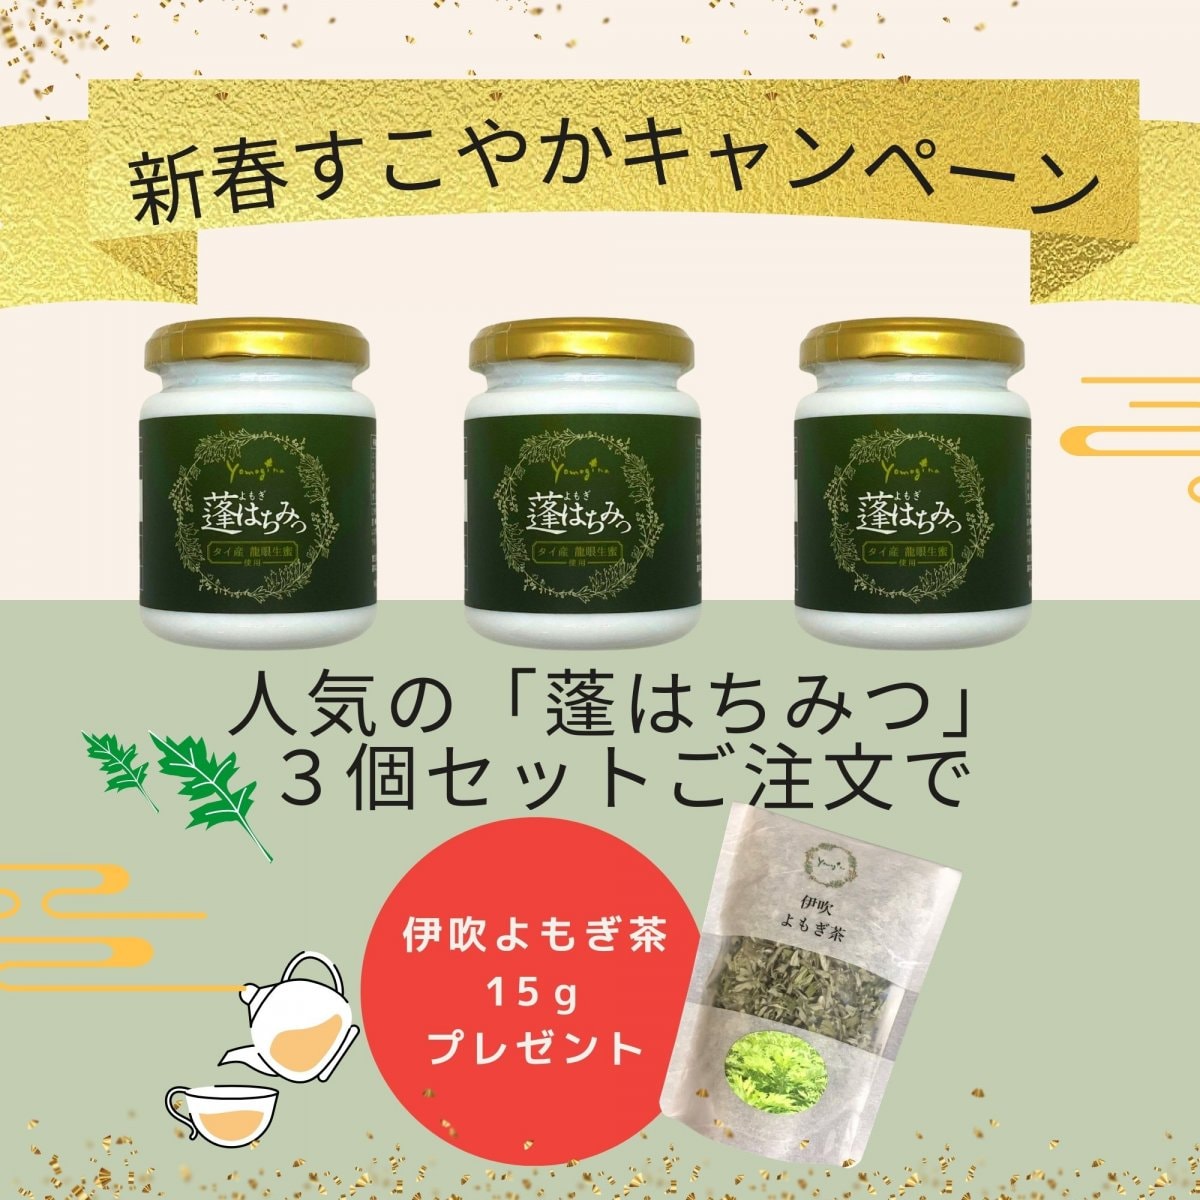 yomogina蓬はちみつ3個セットでお茶プレゼントキャンペーン！